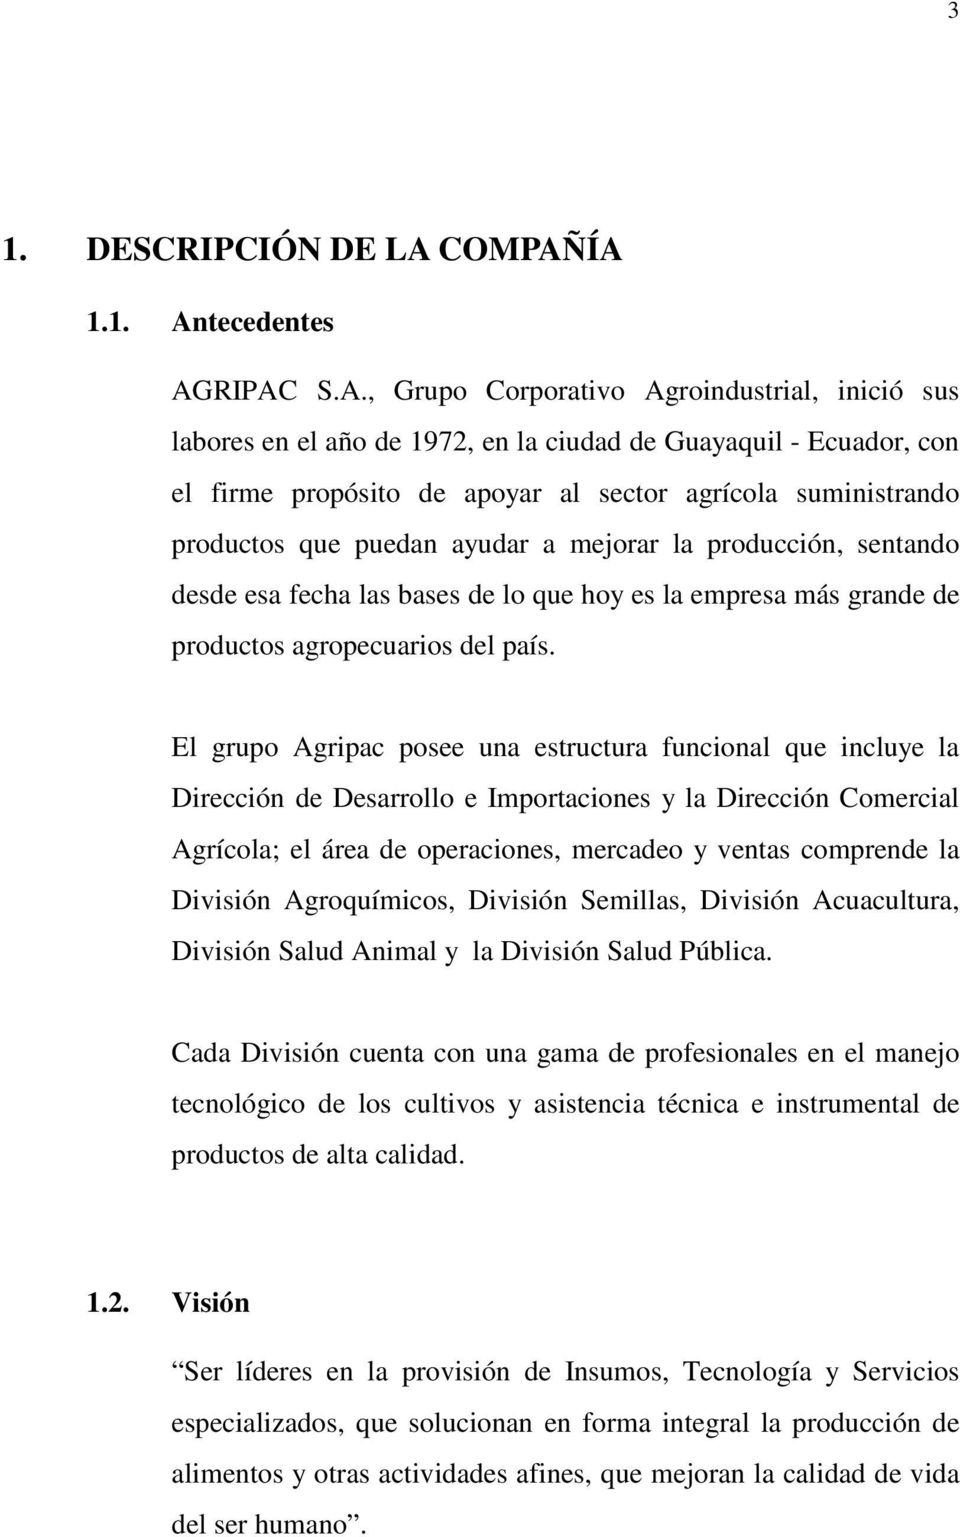 ÍA 1.1. Antecedentes AGRIPAC S.A., Grupo Corporativo Agroindustrial, inició sus labores en el año de 1972, en la ciudad de Guayaquil - Ecuador, con el firme propósito de apoyar al sector agrícola